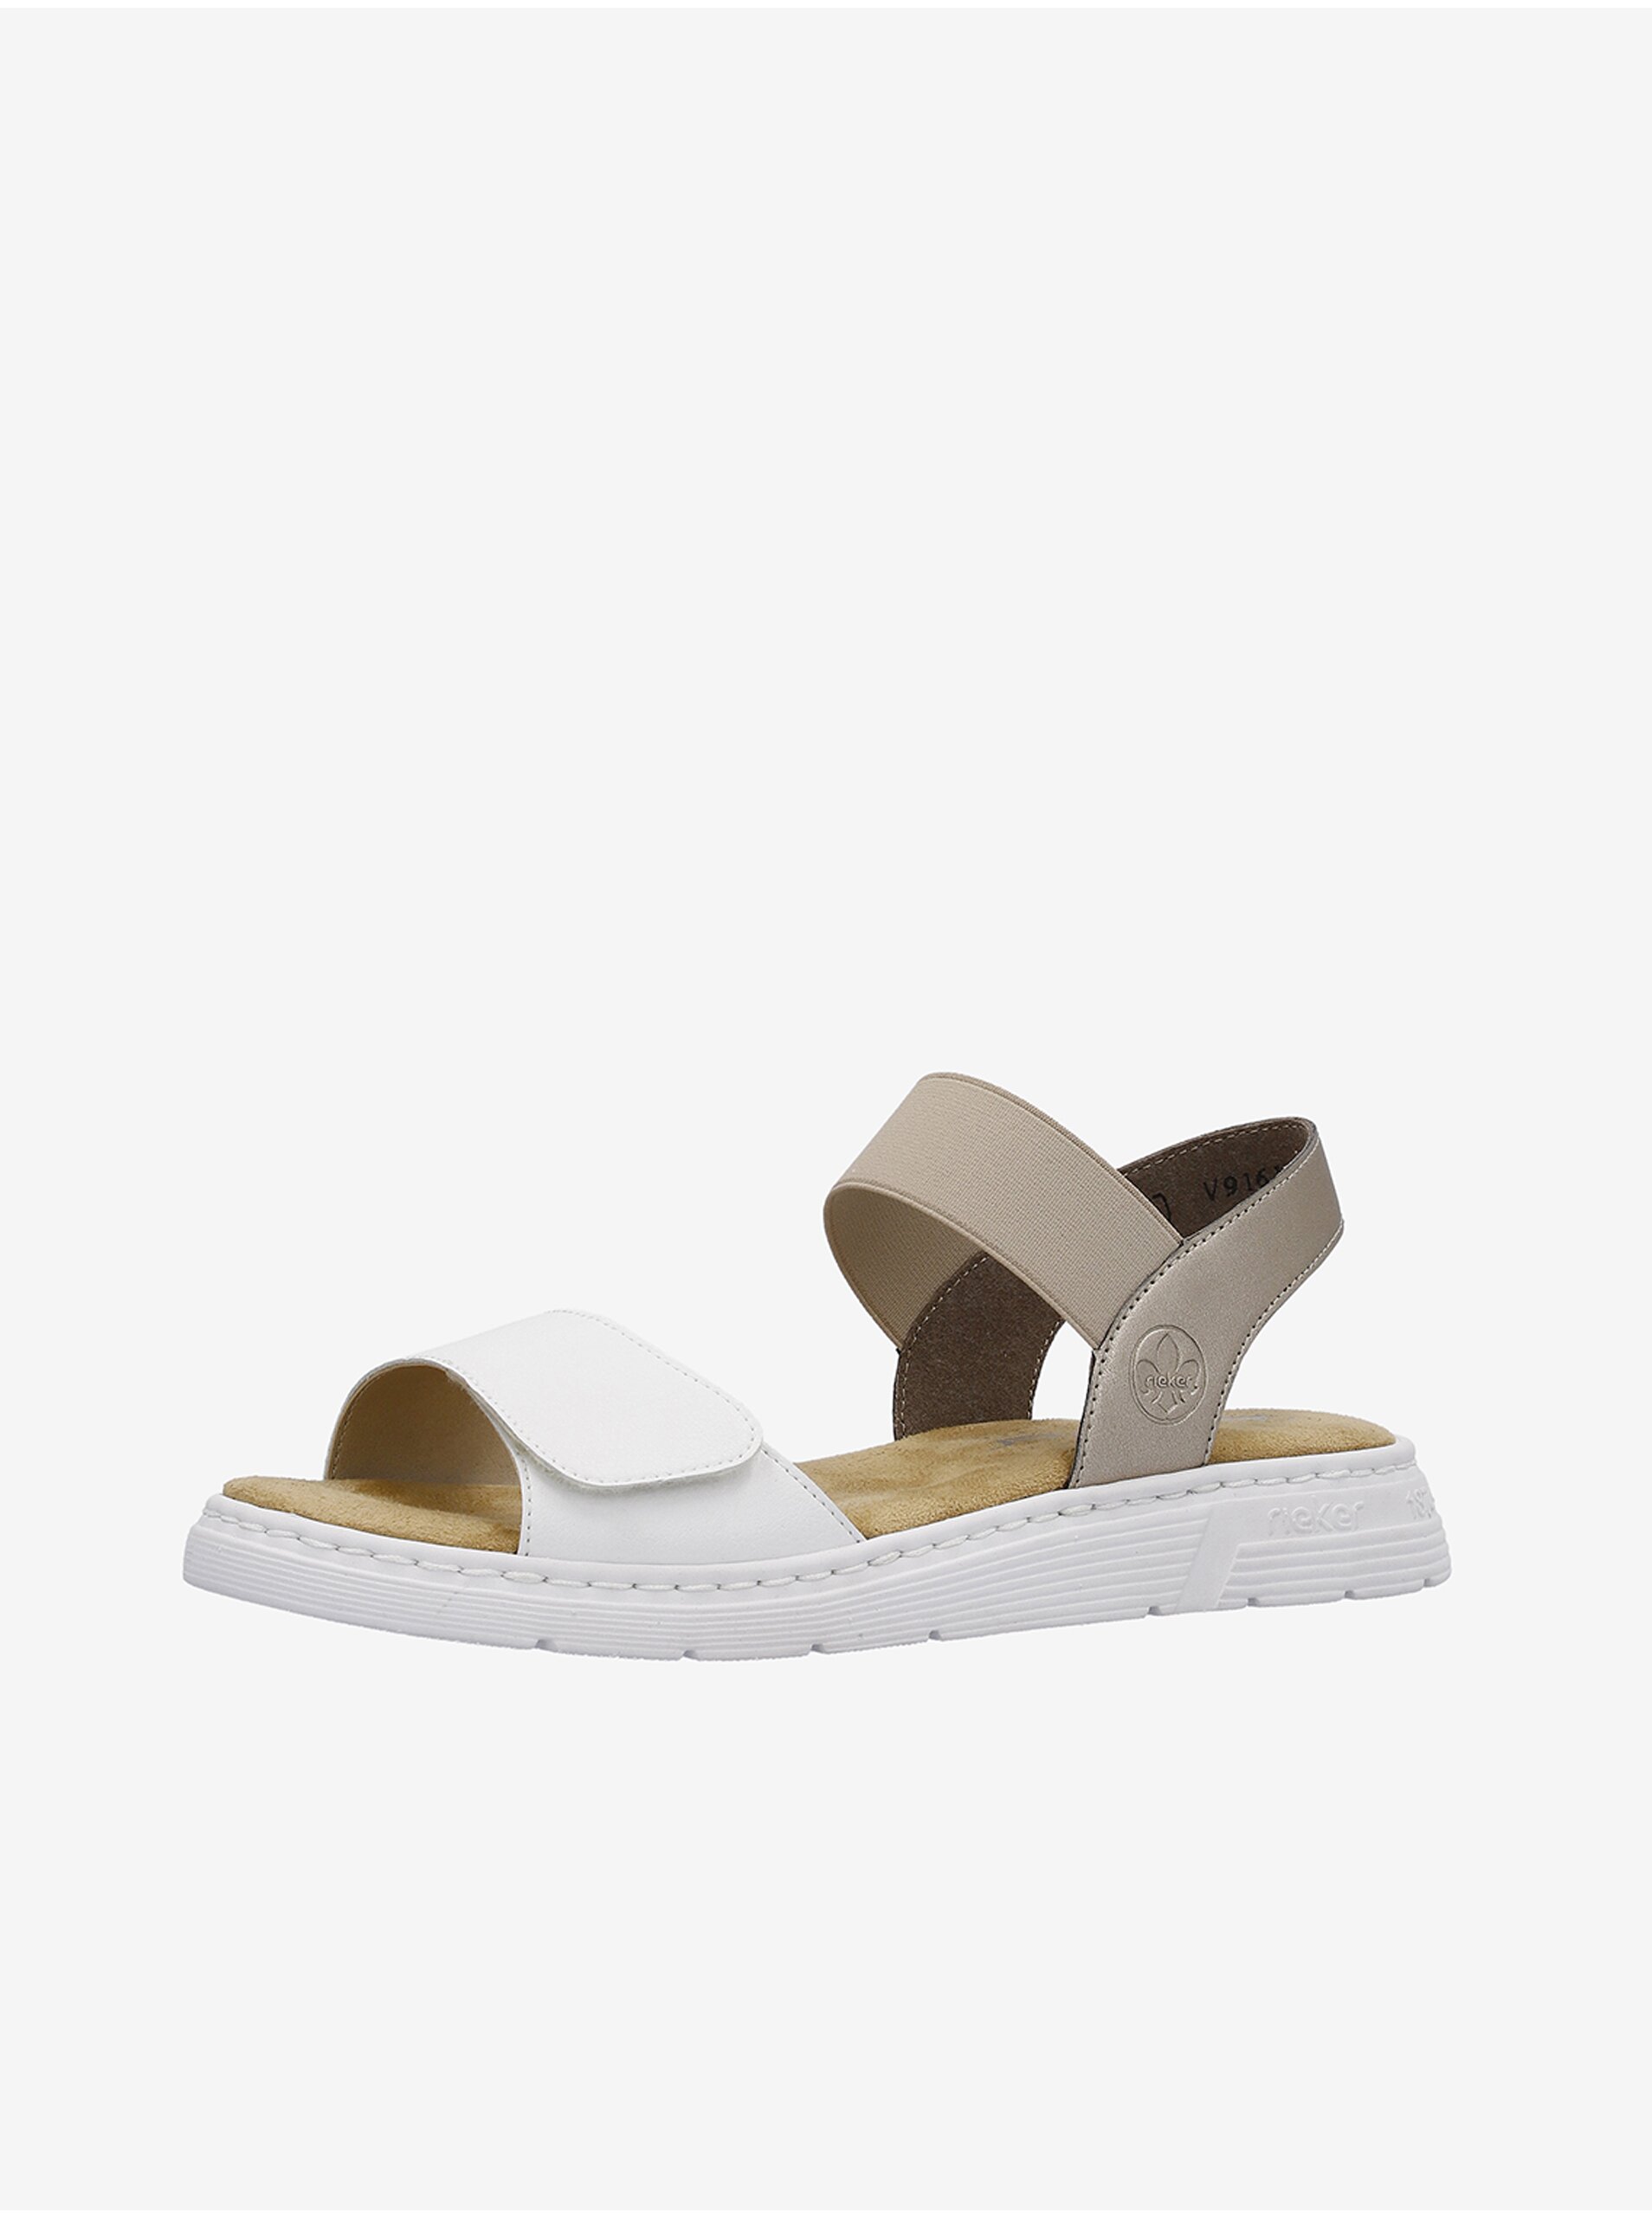 E-shop Béžovo-bílé dámské kožené sandálky Rieker